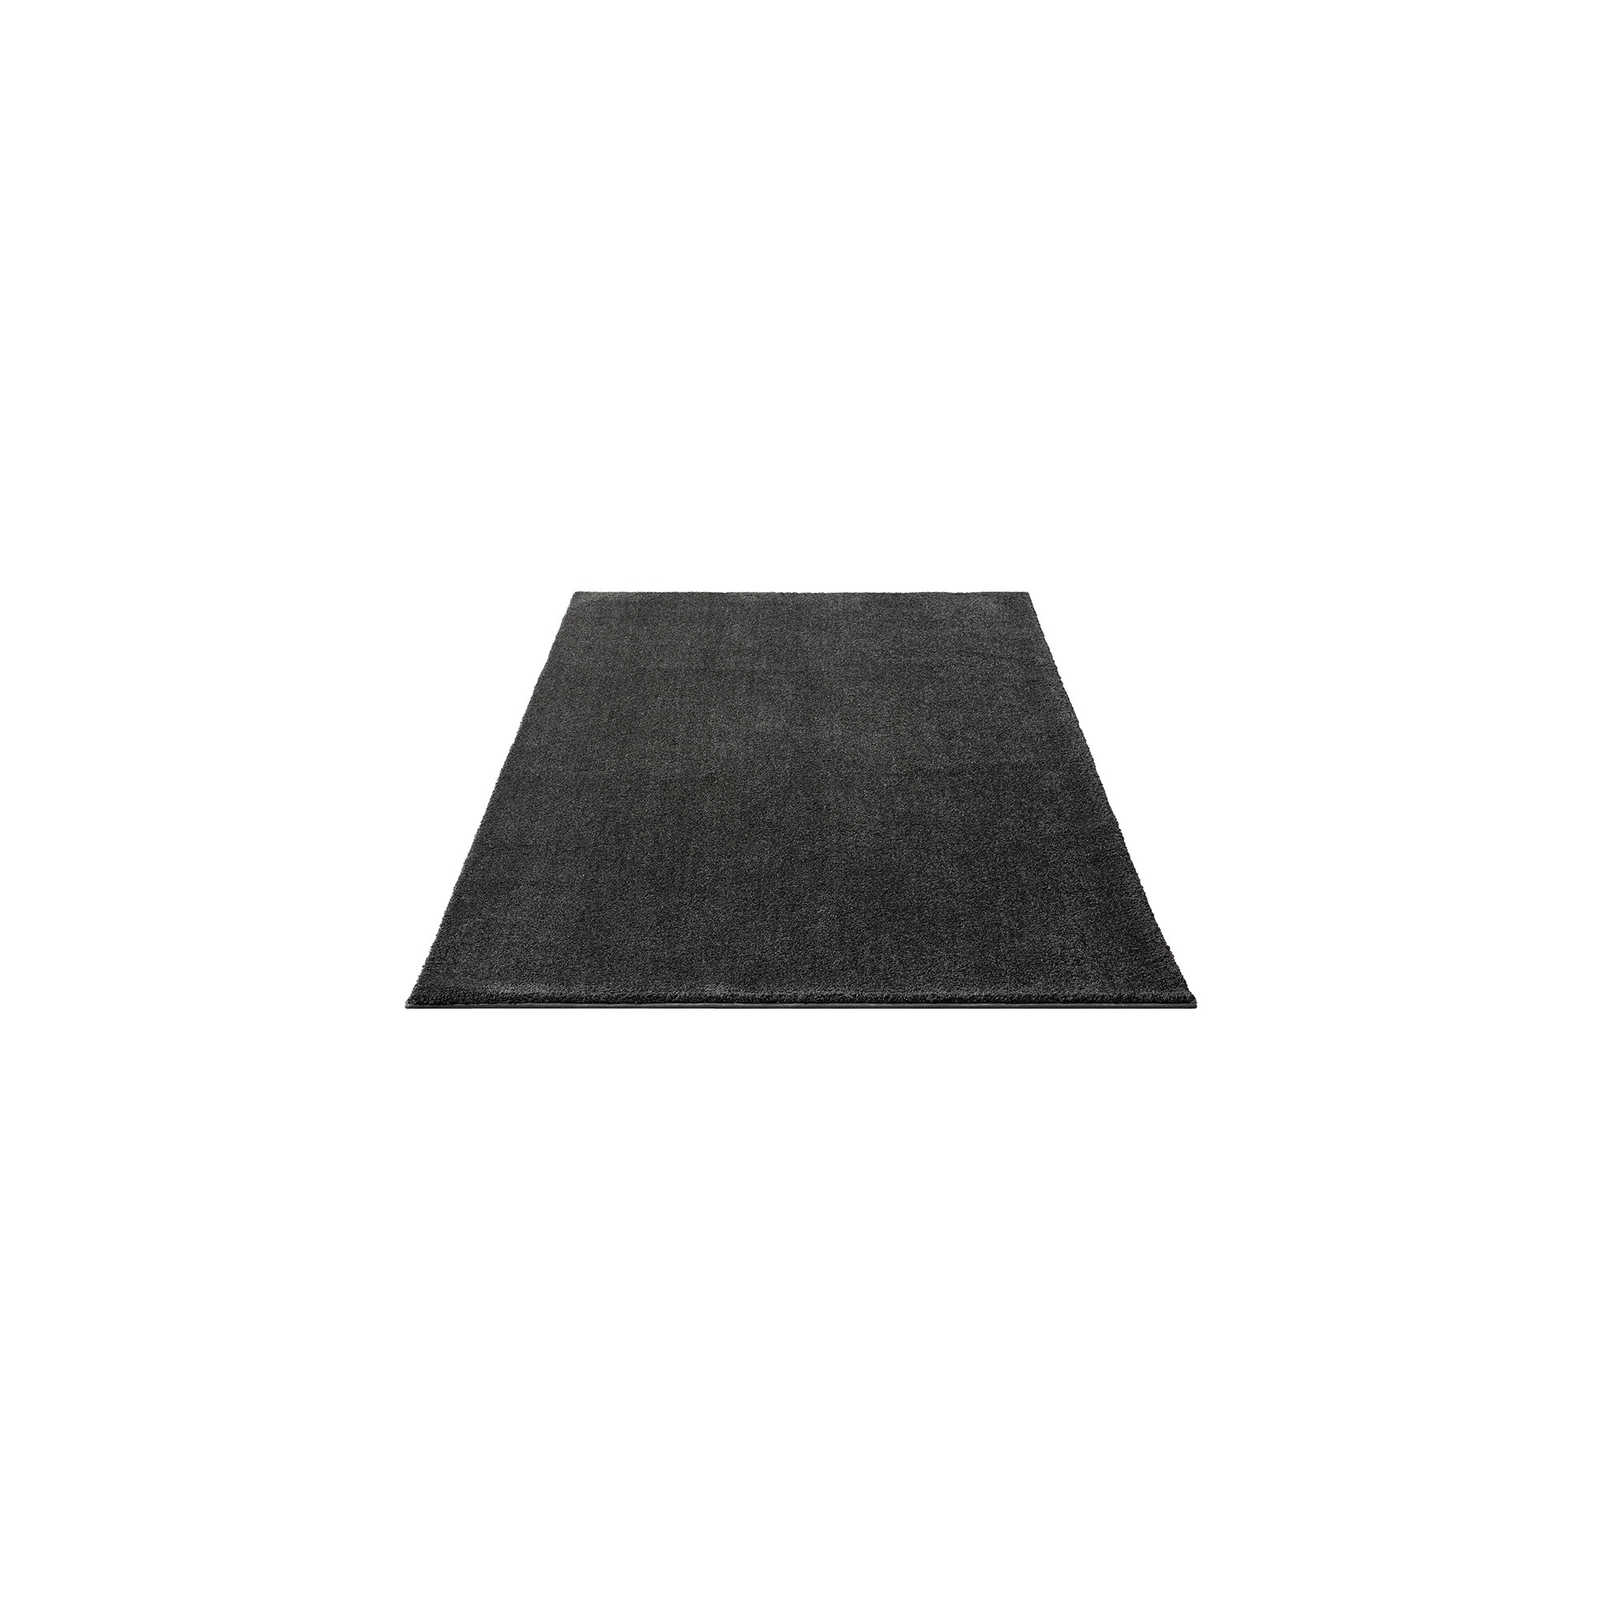 Zacht kortpolig tapijt in antraciet - 150 x 80 cm
